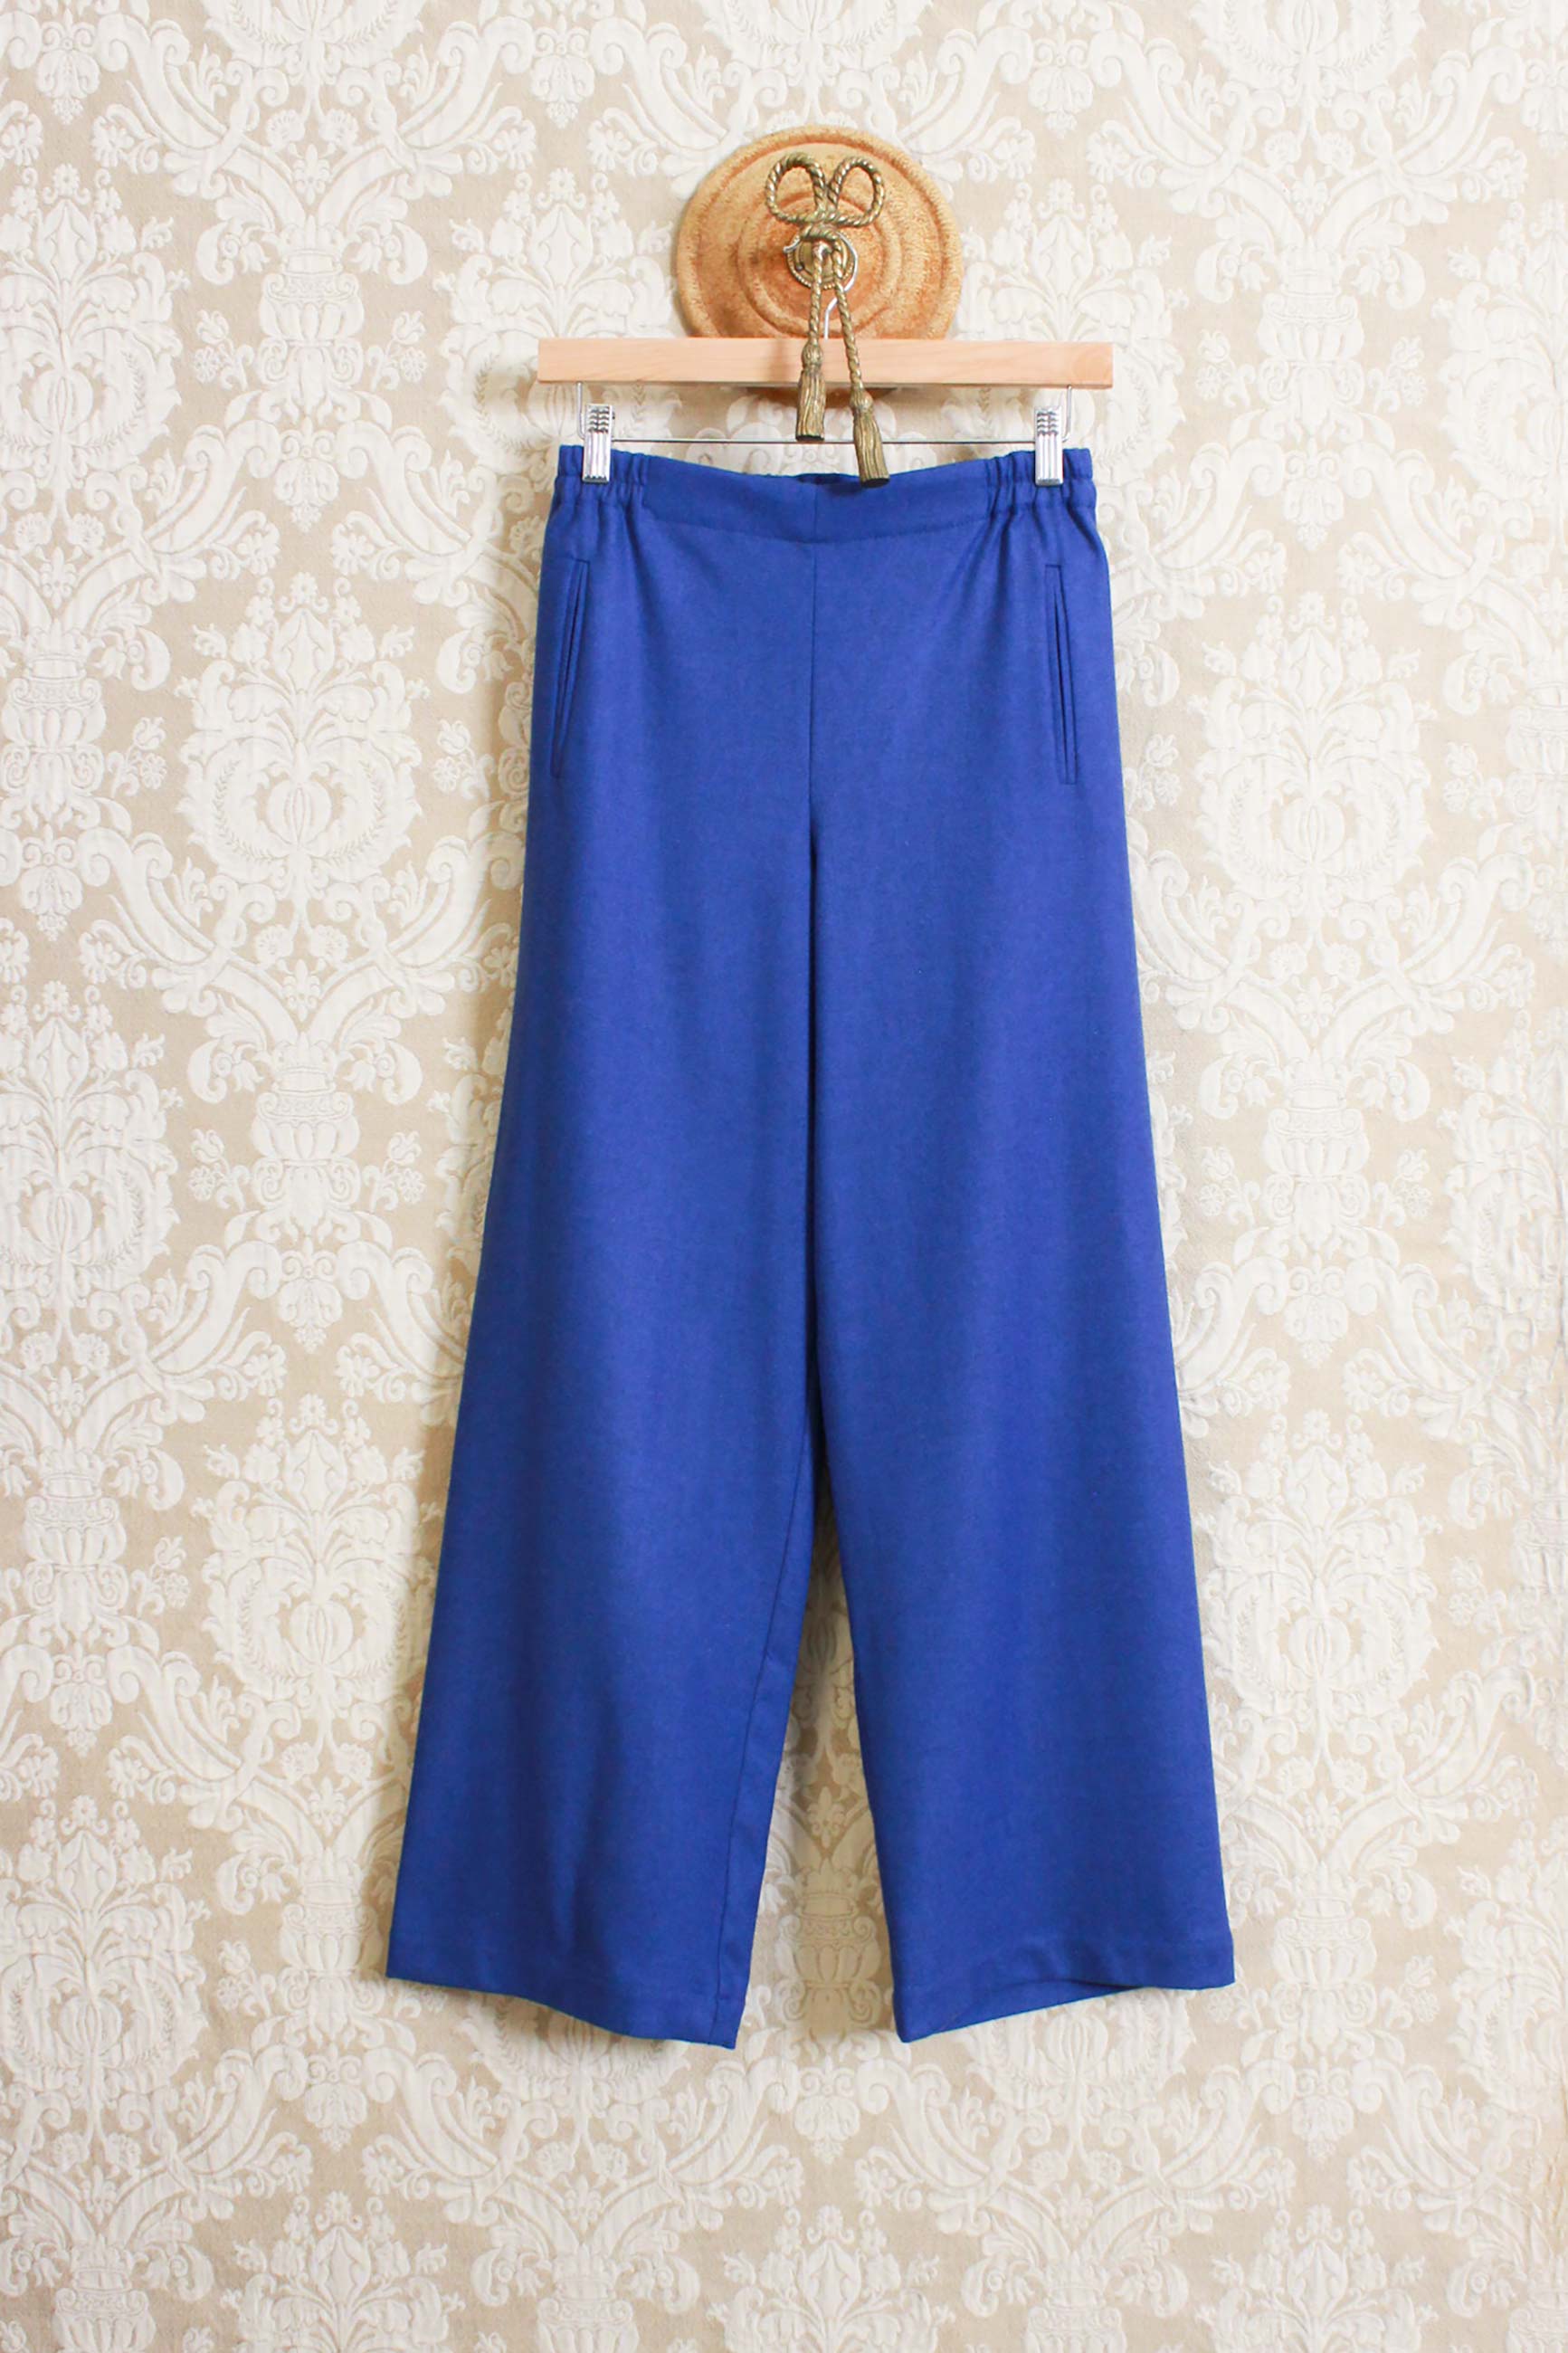 Pantalone bojan di niù fashion in lana color blue isla collezione autunno inverno 23